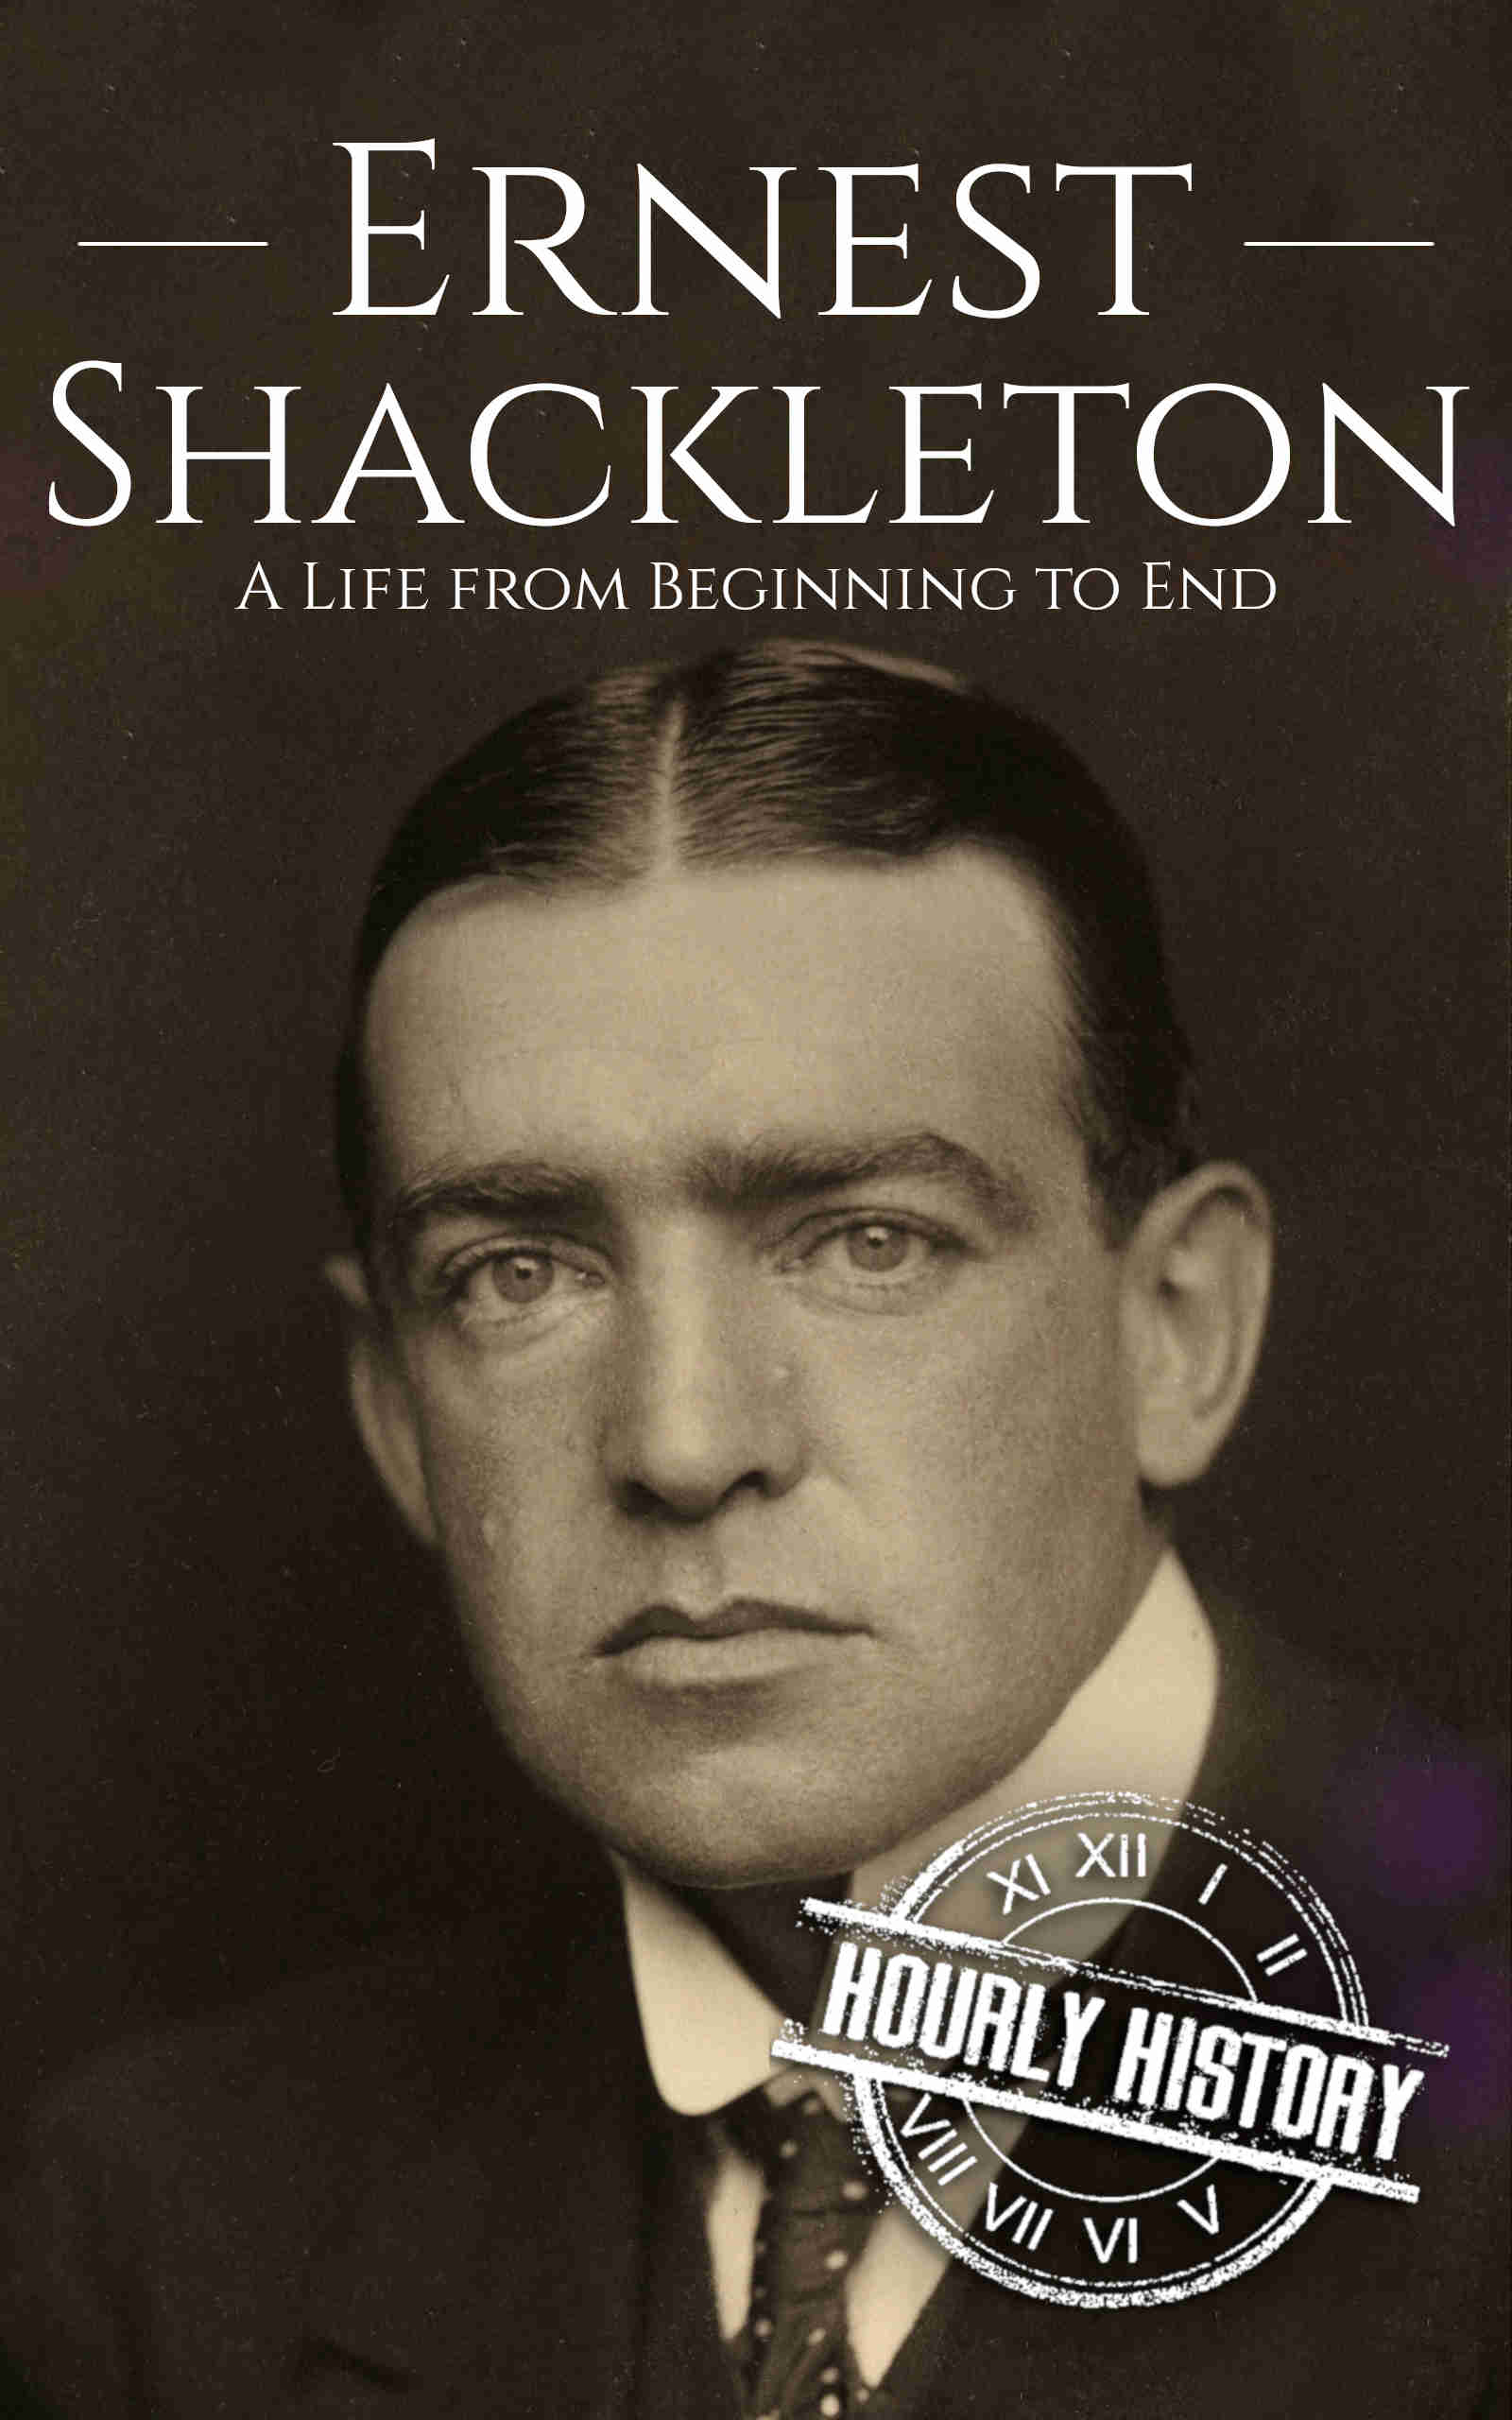 Book cover for Ernest Shackleton